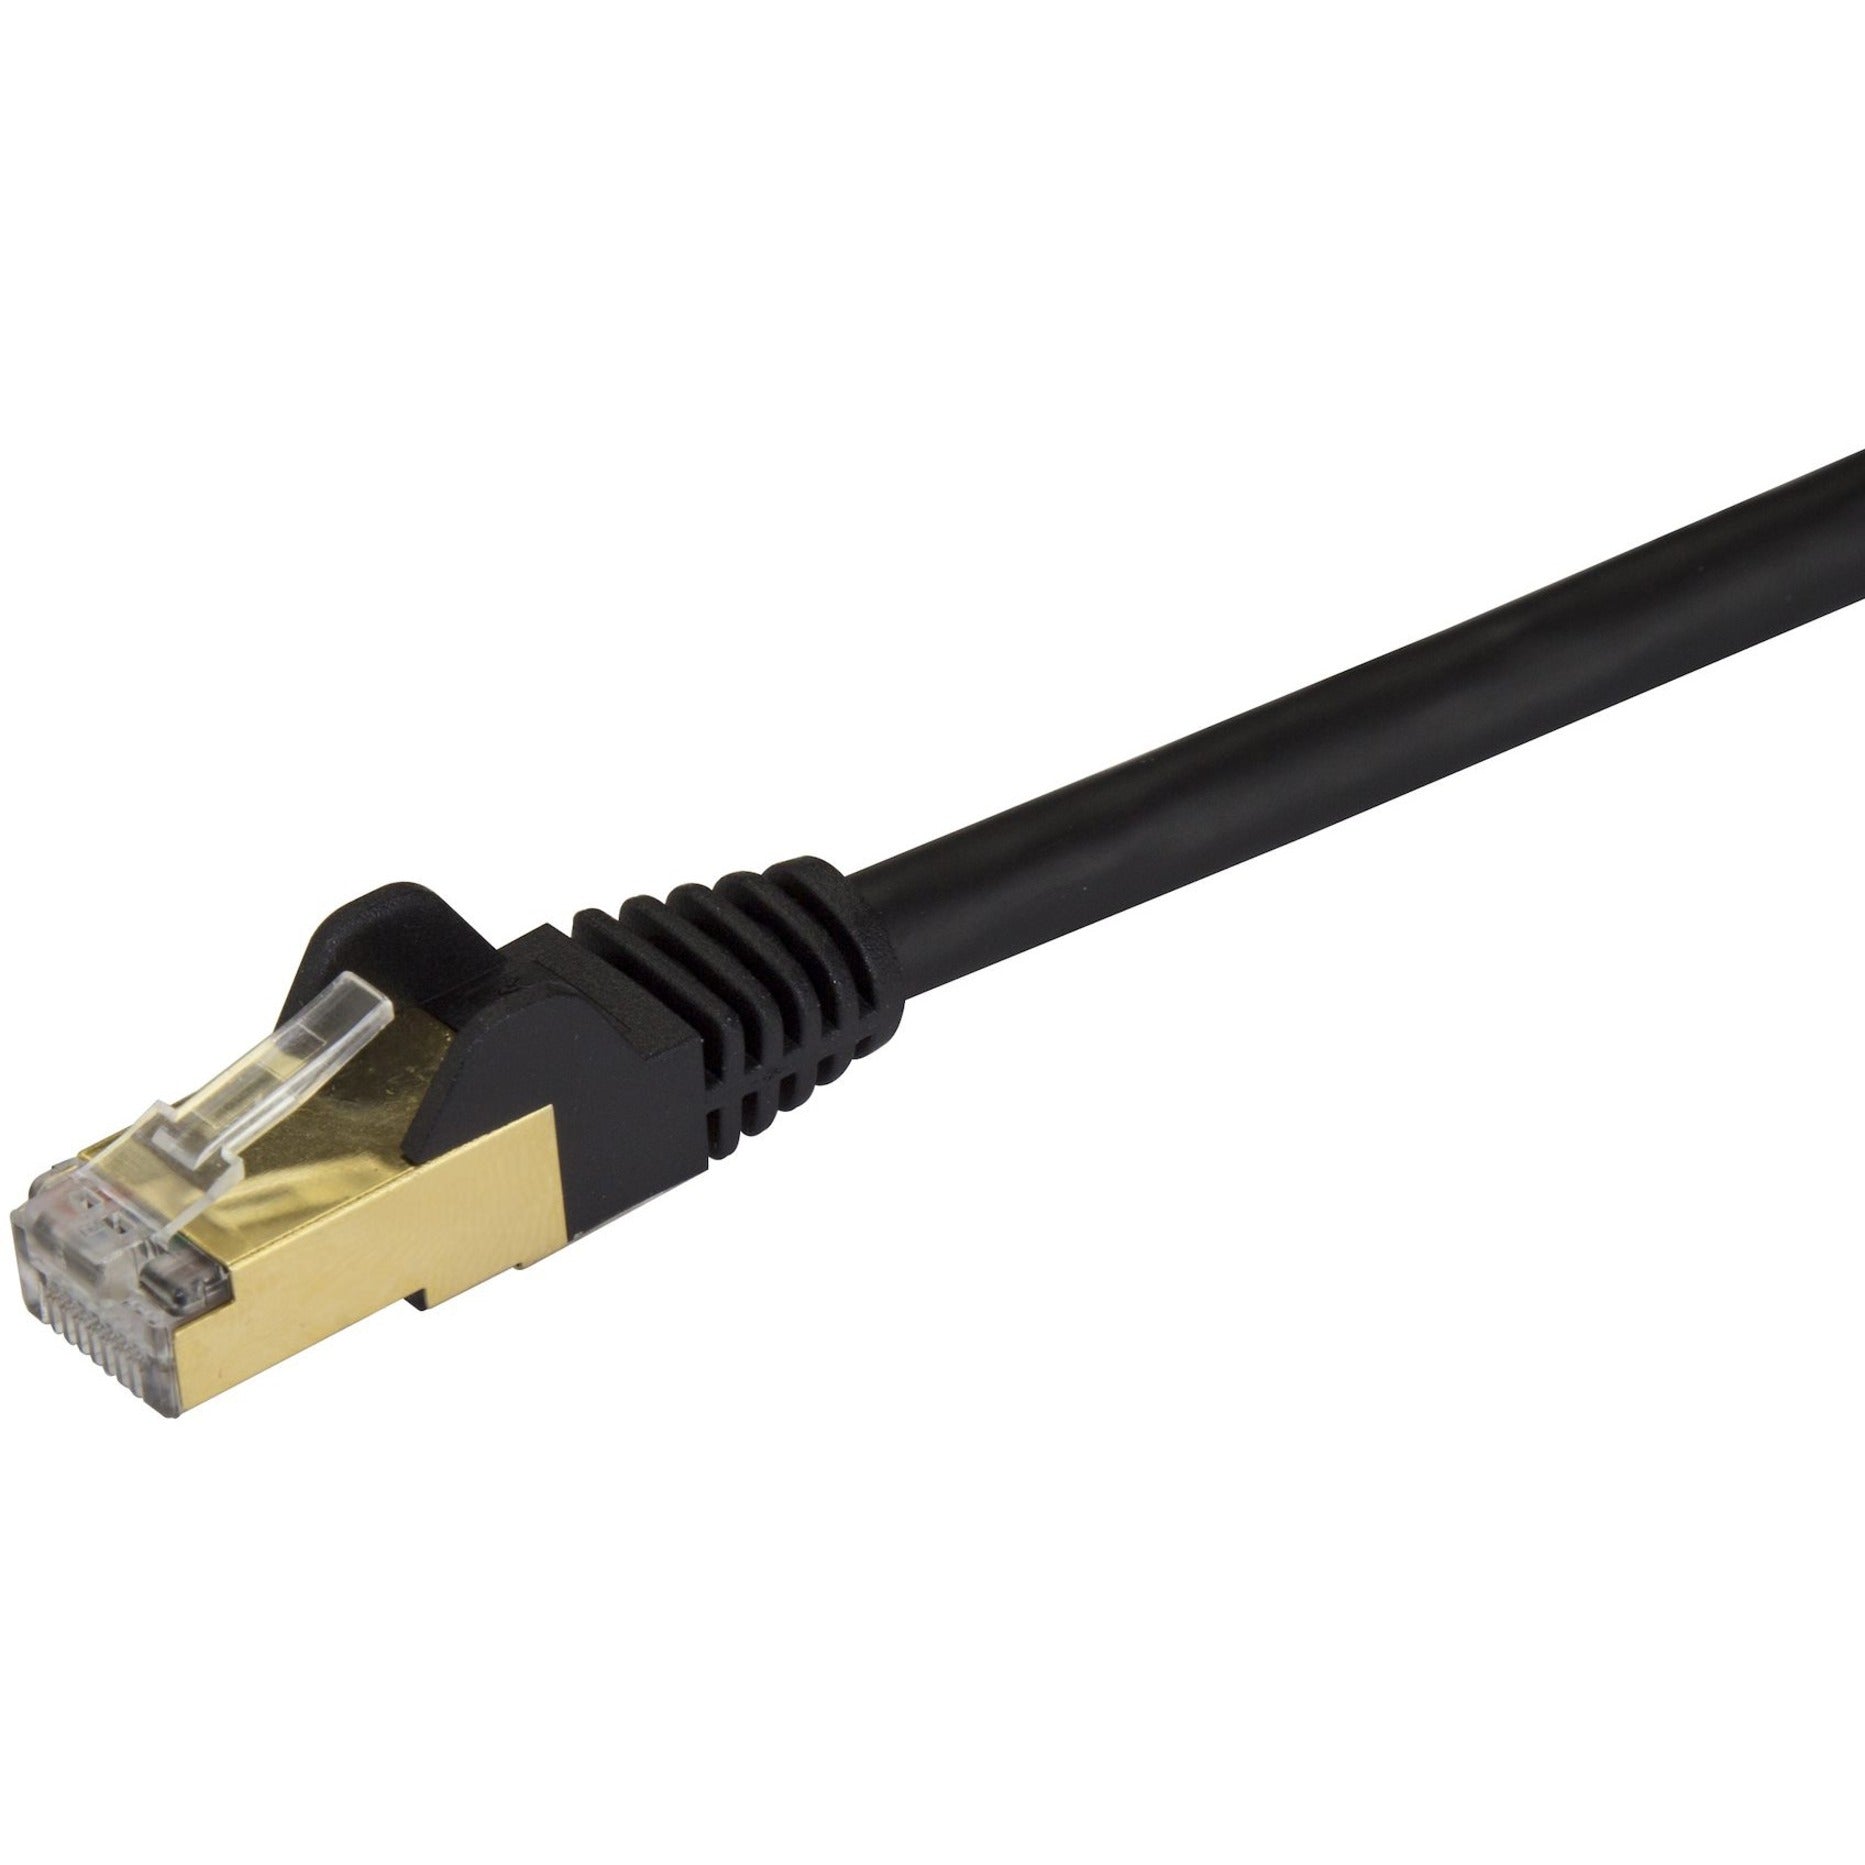 StarTech.com C6ASPAT30BK Cat6a Ethernet Patch Cable - Shielded (STP) - 30 ft. Black Long Ethernet Cord  StarTech.com Câble de connexion Ethernet Cat6a C6ASPAT30BK - Blindé (STP) - 30 pi Noir Cordon Ethernet long